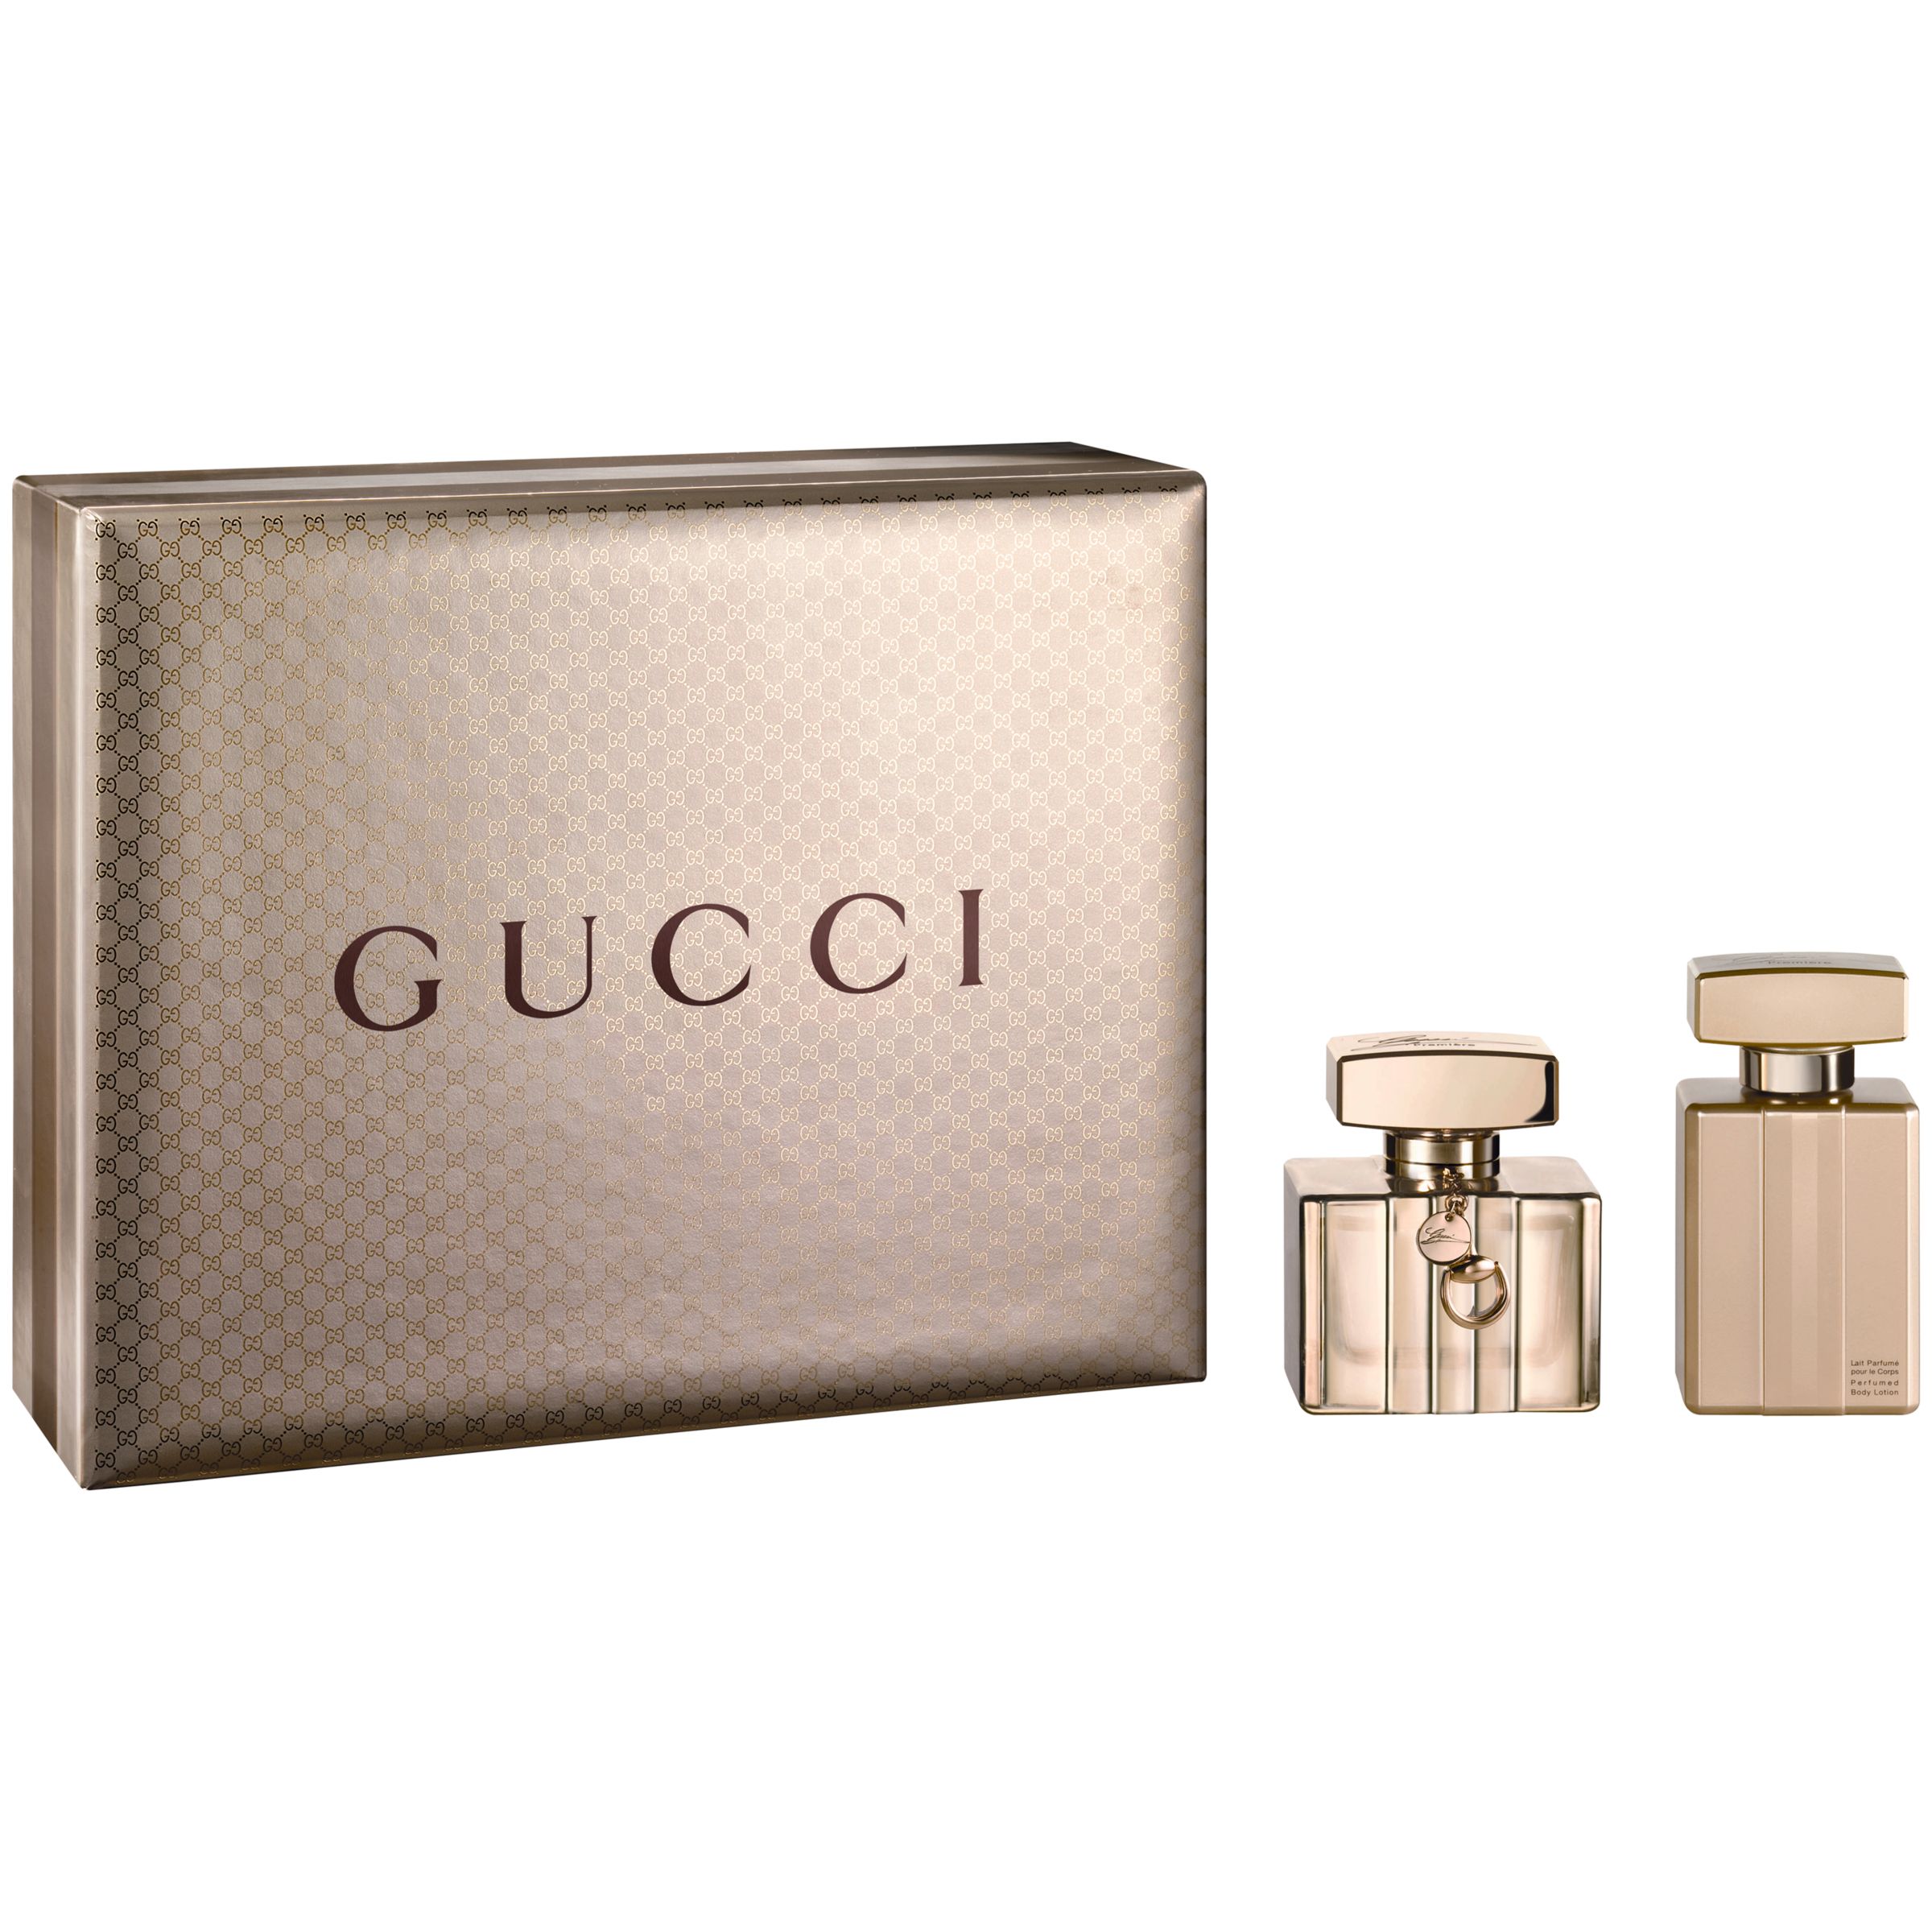 Gucci Première Eau de Parfum Gift Set at John Lewis & Partners